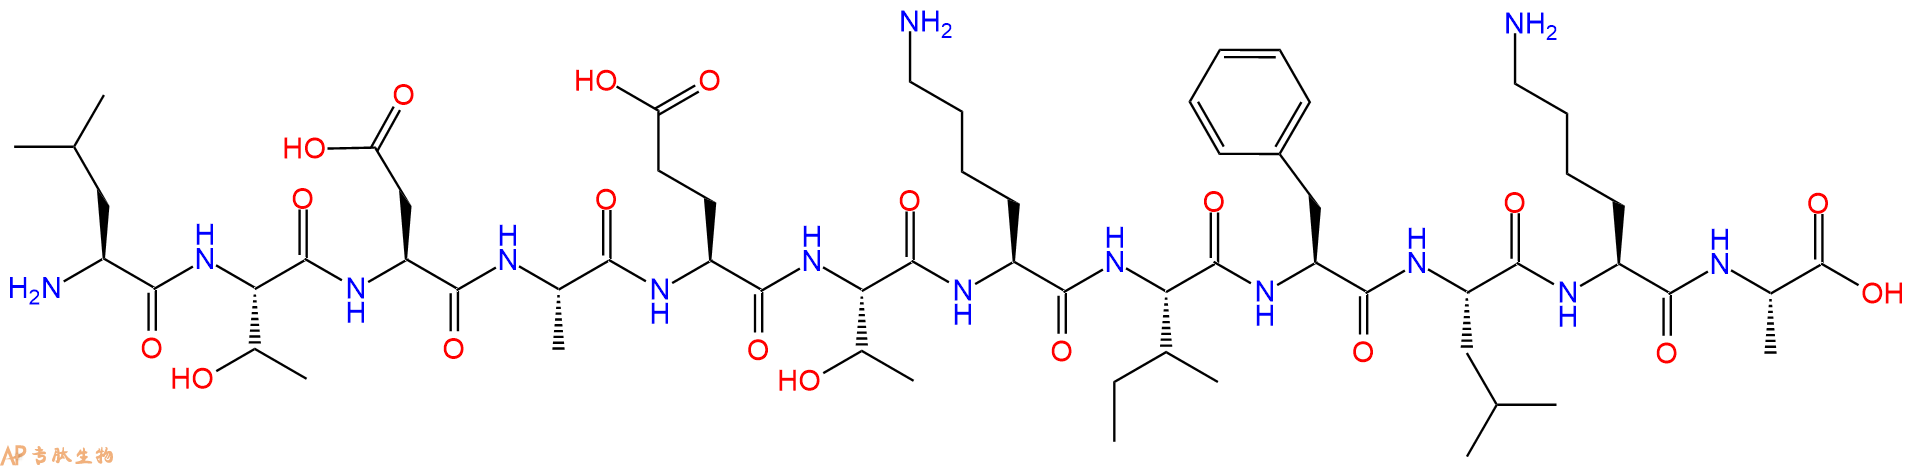 专肽生物产品十二肽LTDAETKIFLKA